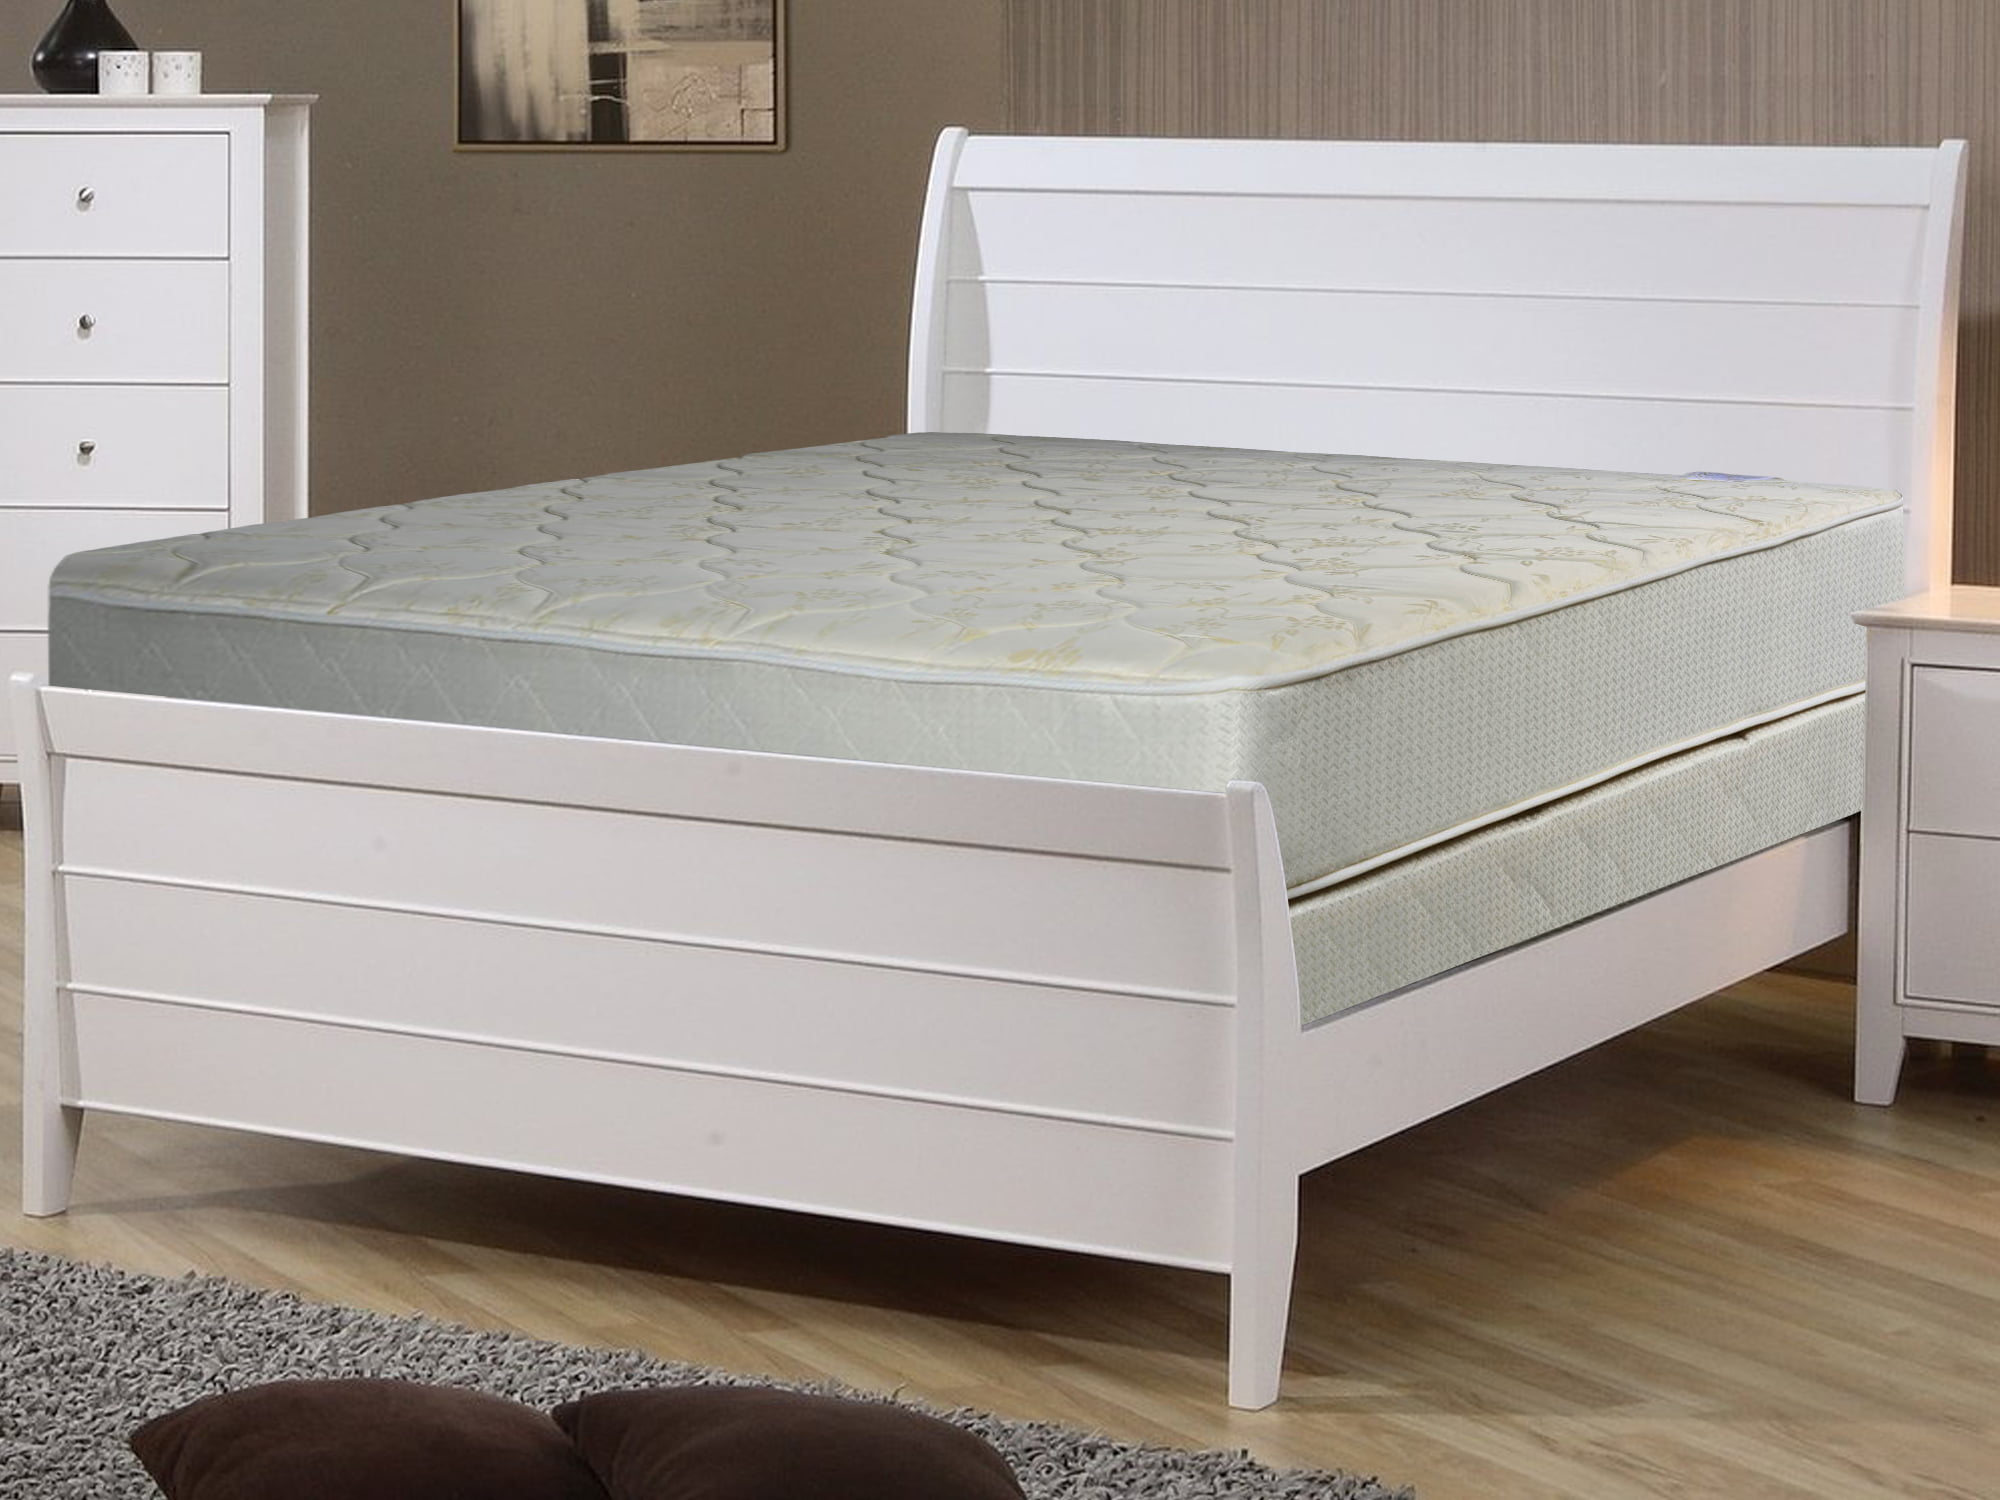 74 long full bed mattress